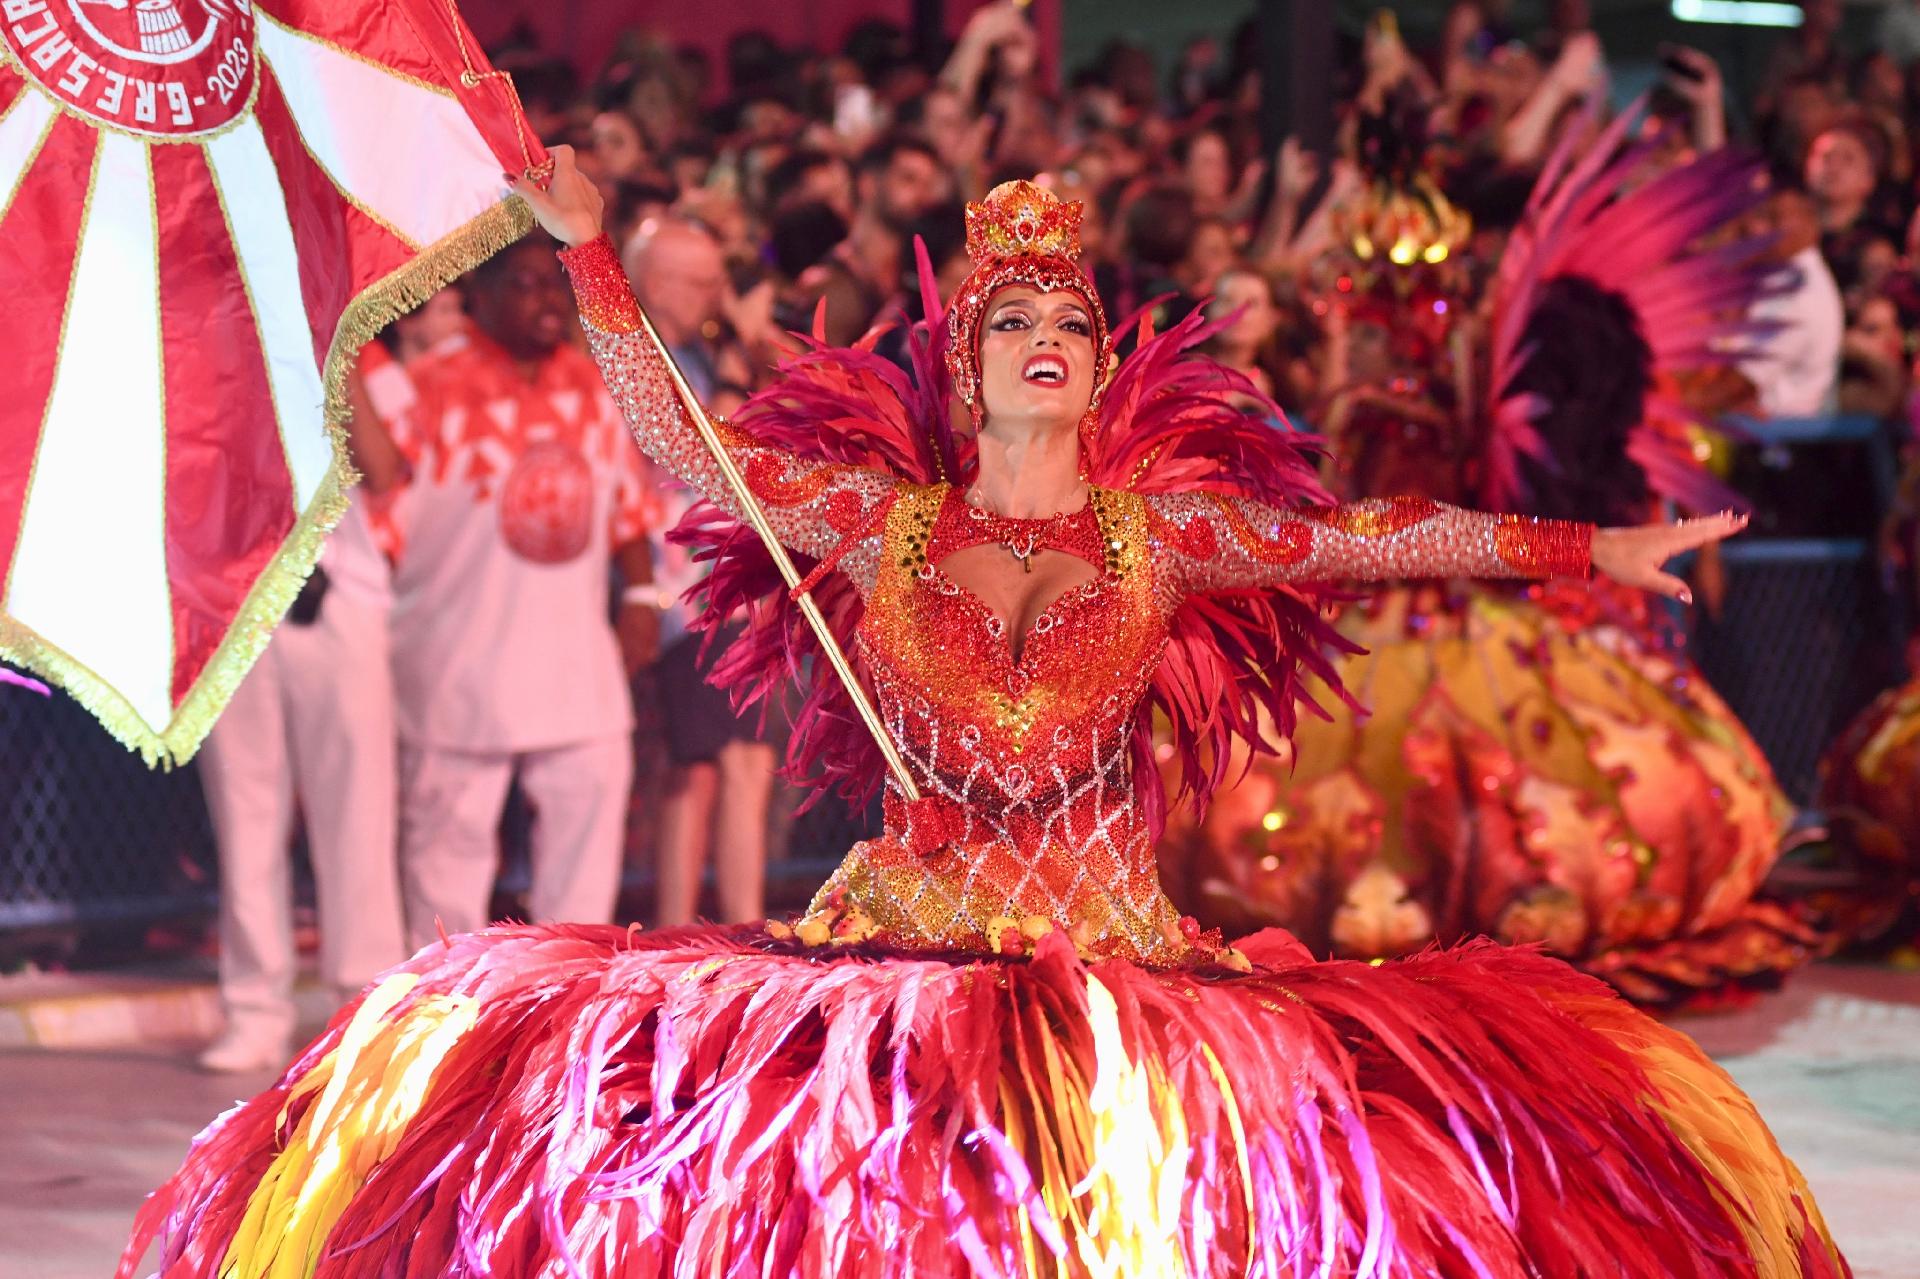 Reconhecimento', afirma babalorixá sobre enredo do Salgueiro Jornal MEIA  HORA - Carnaval